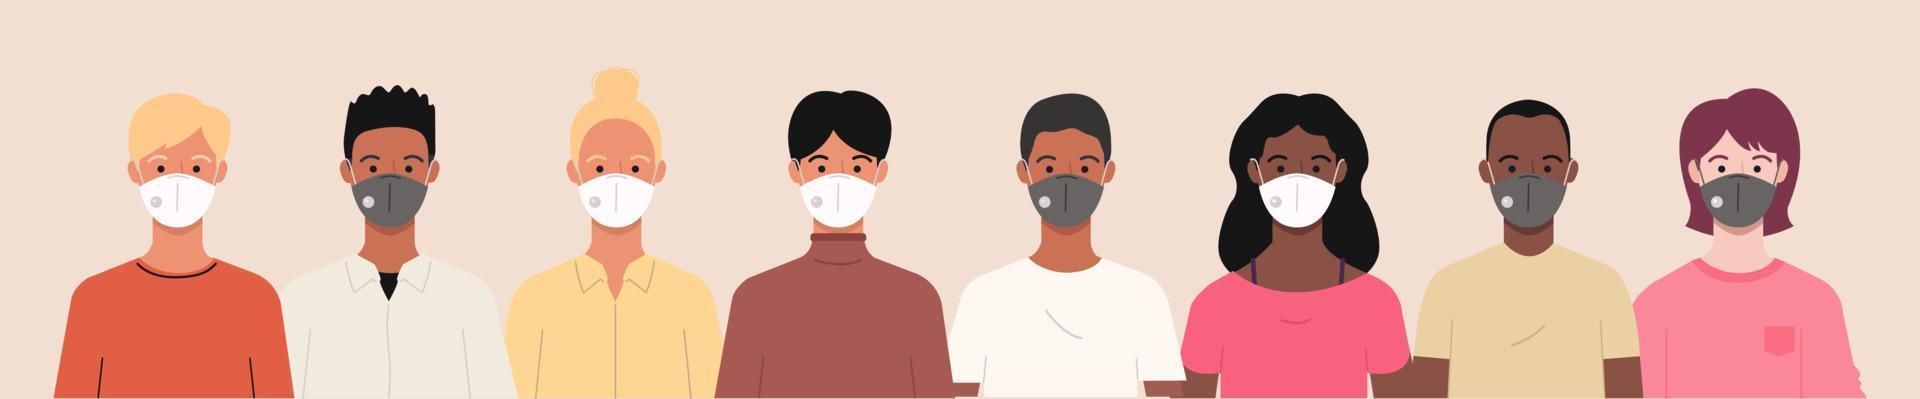 Gruppe von Menschen, die medizinische Masken tragen, um Coronavirus, Covid-19-Krankheit, Grippe, Luftverschmutzung, kontaminierte Luft und Weltverschmutzung zu verhindern. Vektor-Banner-Illustration in einem flachen Stil vektor